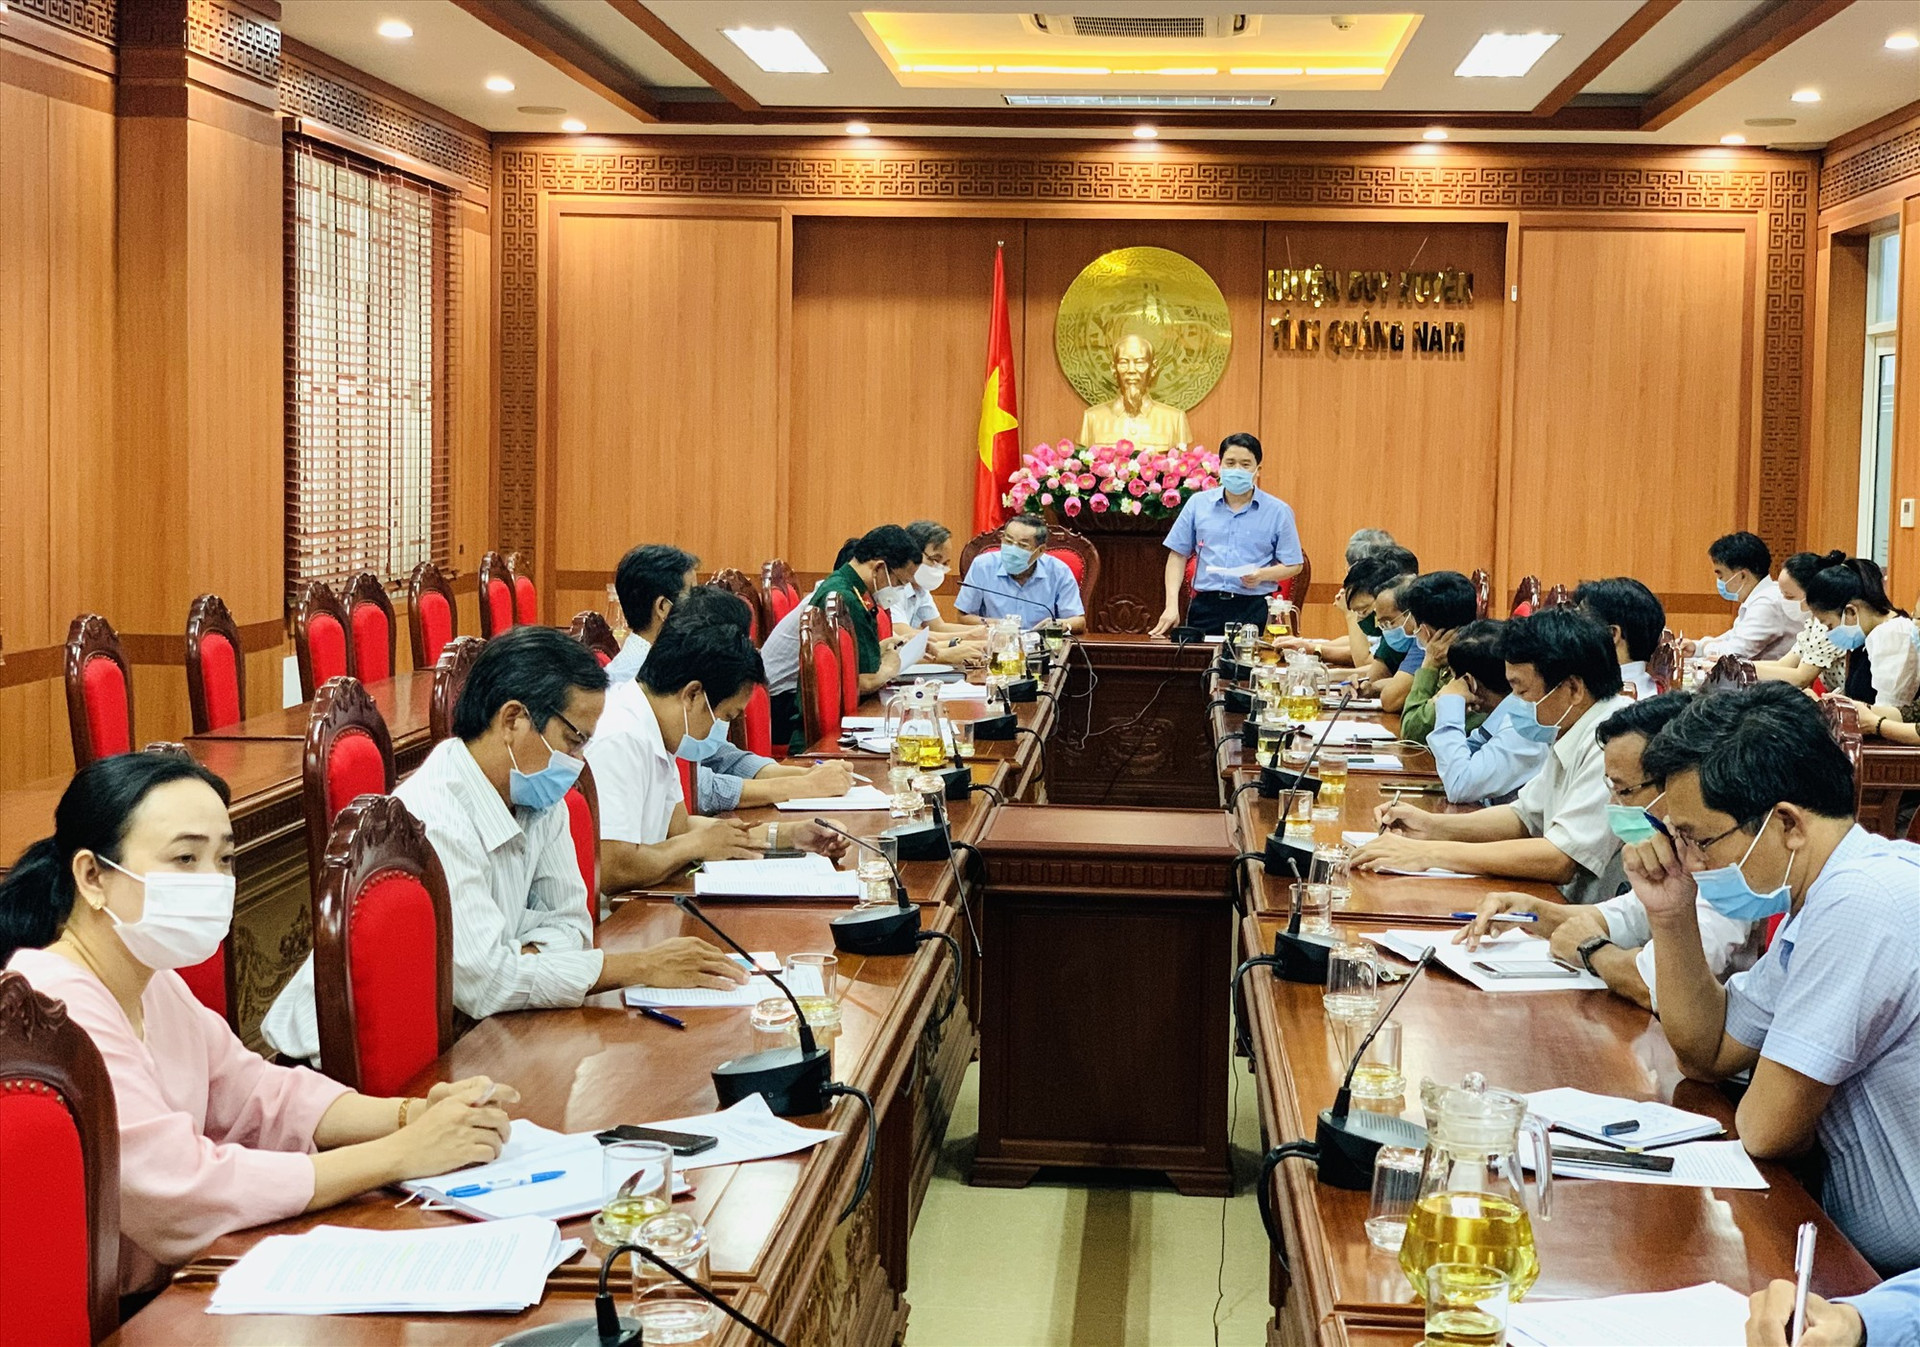 Phó Chủ tịch UBND tỉnh Trần Văn Tân phát biểu chỉ đạo tại buổi làm việc với lãnh đạo huyện Duy Xuyên chiều 14.5. Ảnh: T.P